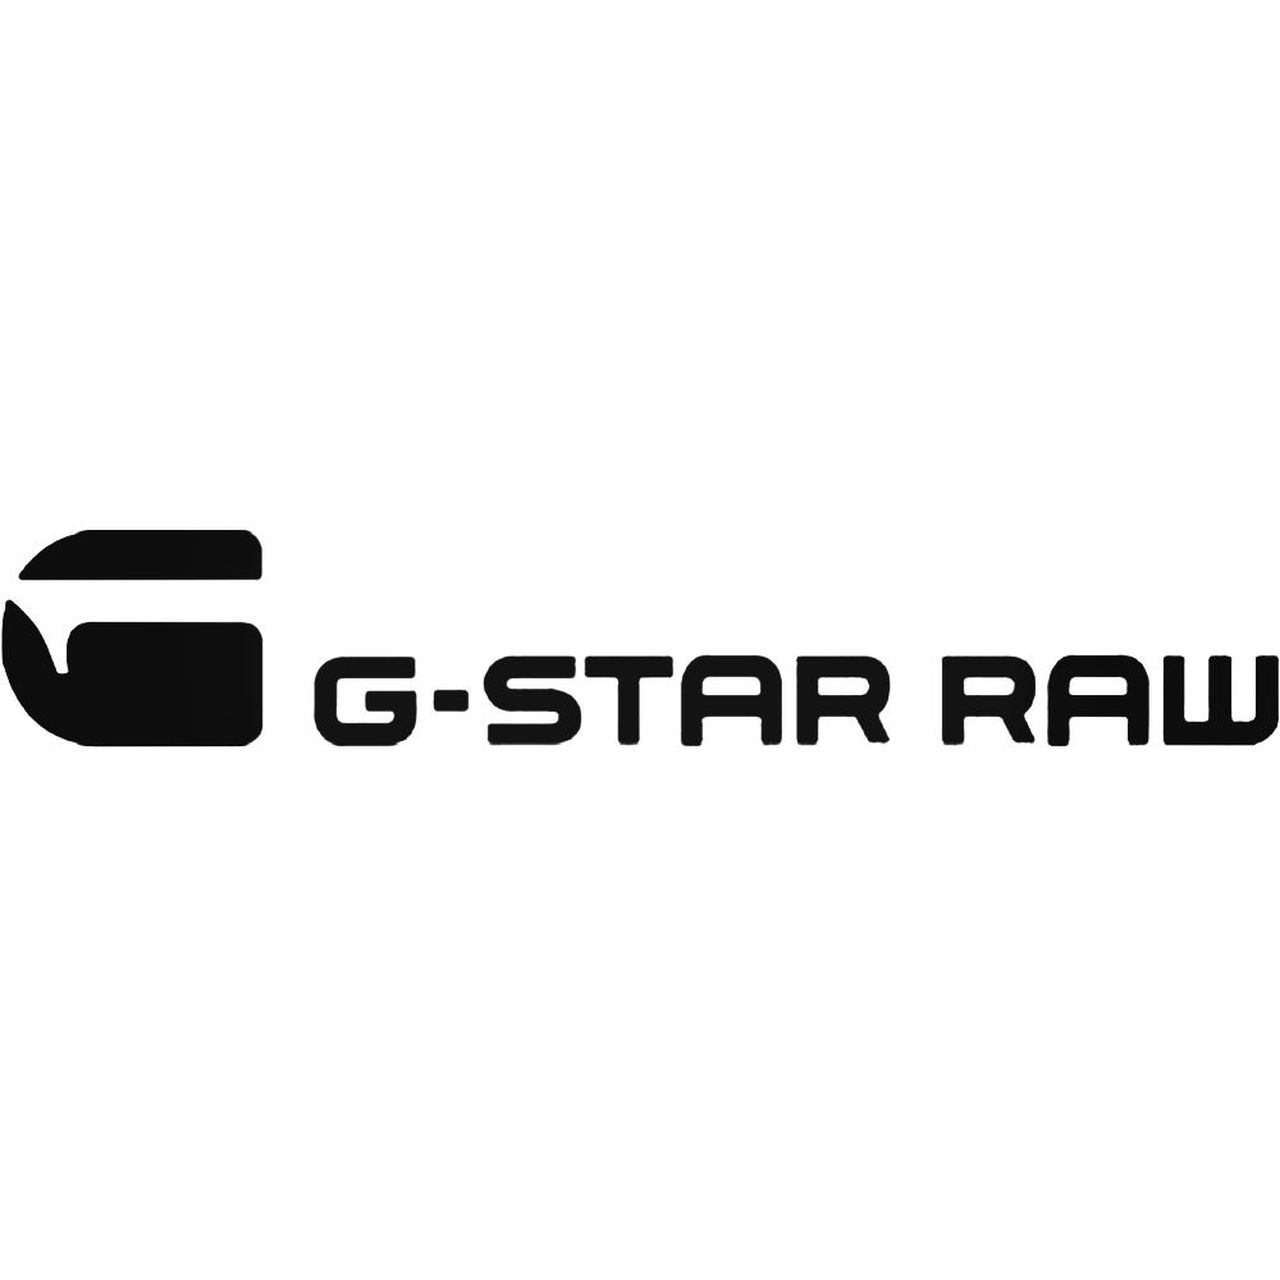 G-star raw